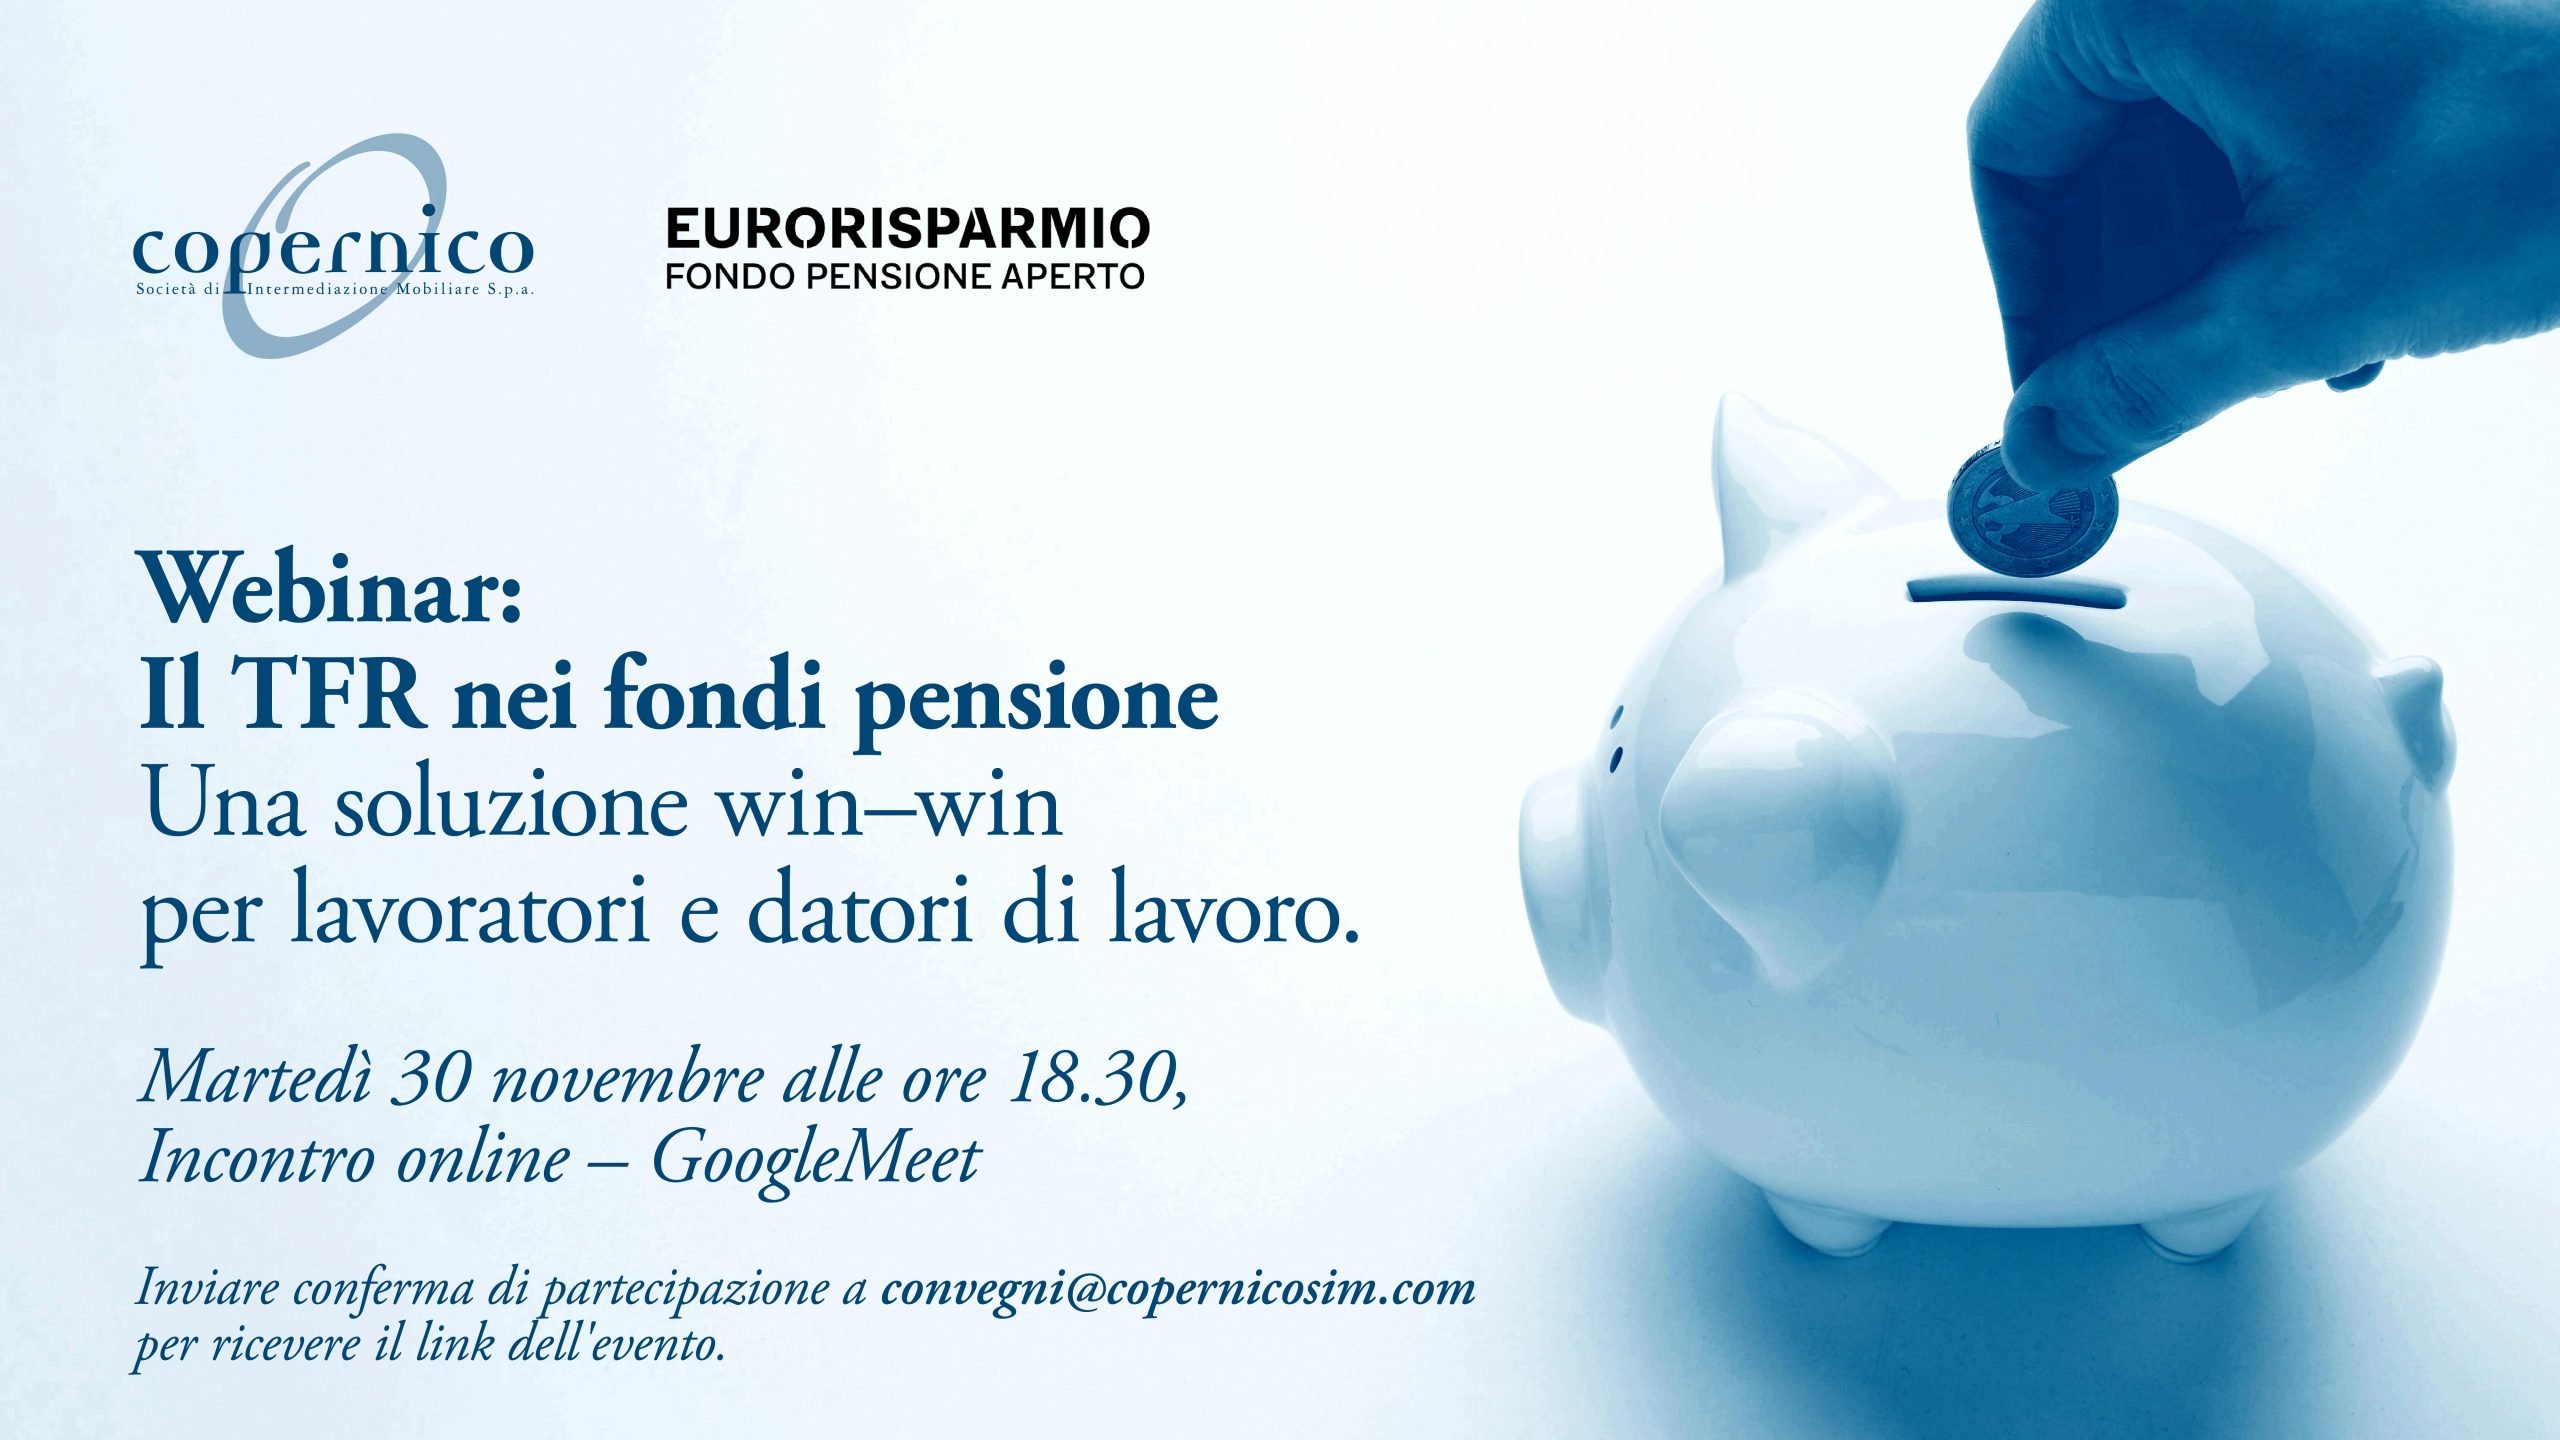 Webinar “Il TFR nei fondi pensione”